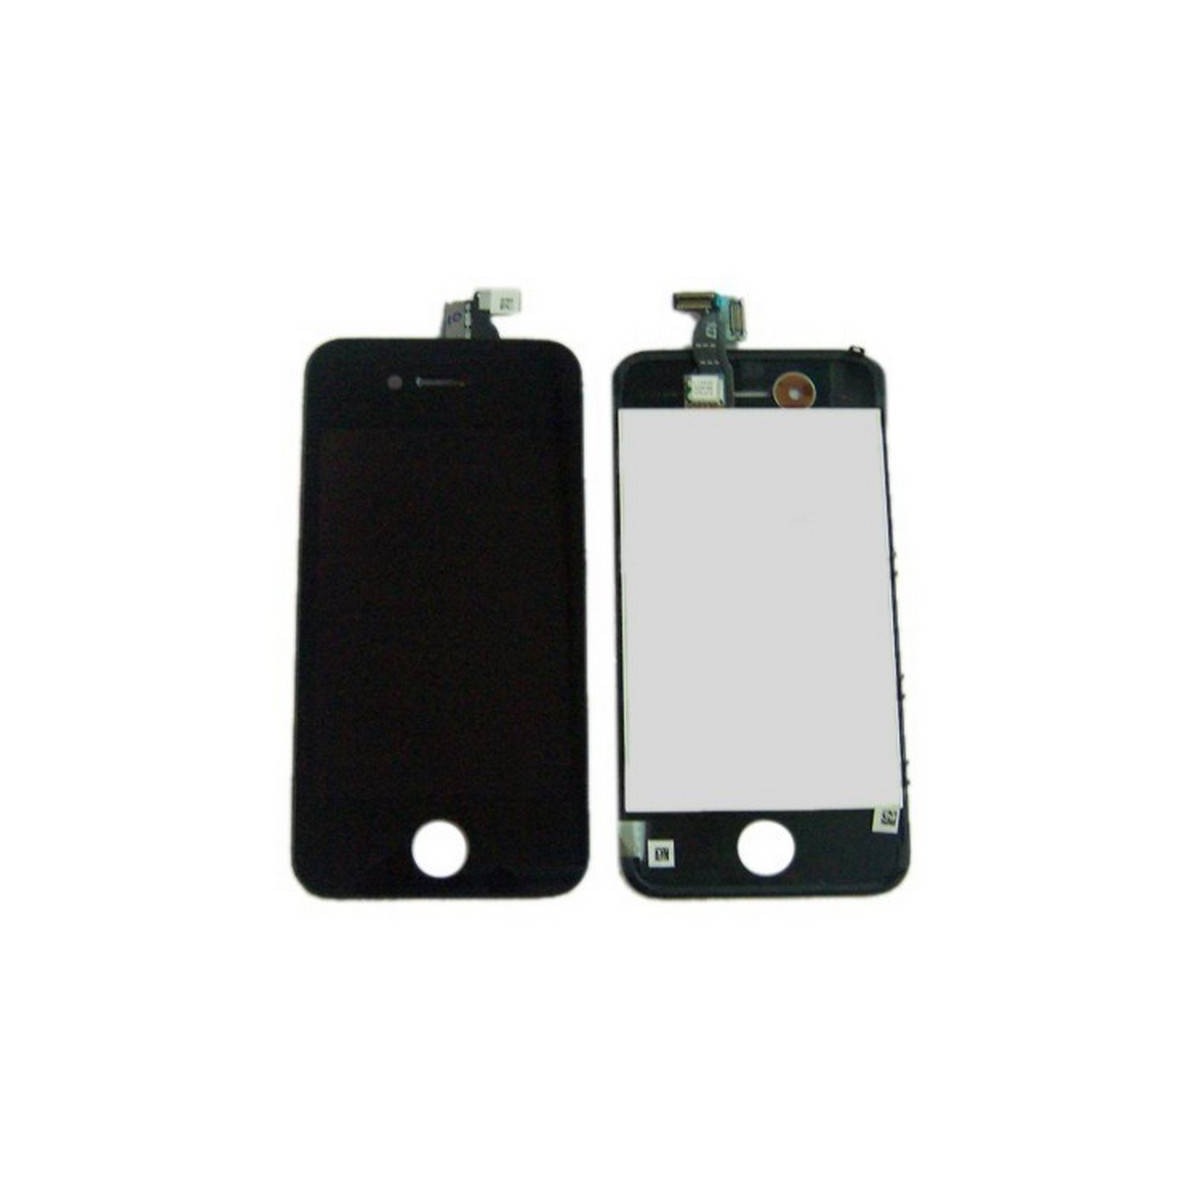 Pantalla digitalizadora, ventana táctil negra y display  iPhone 4S ORIGINAL